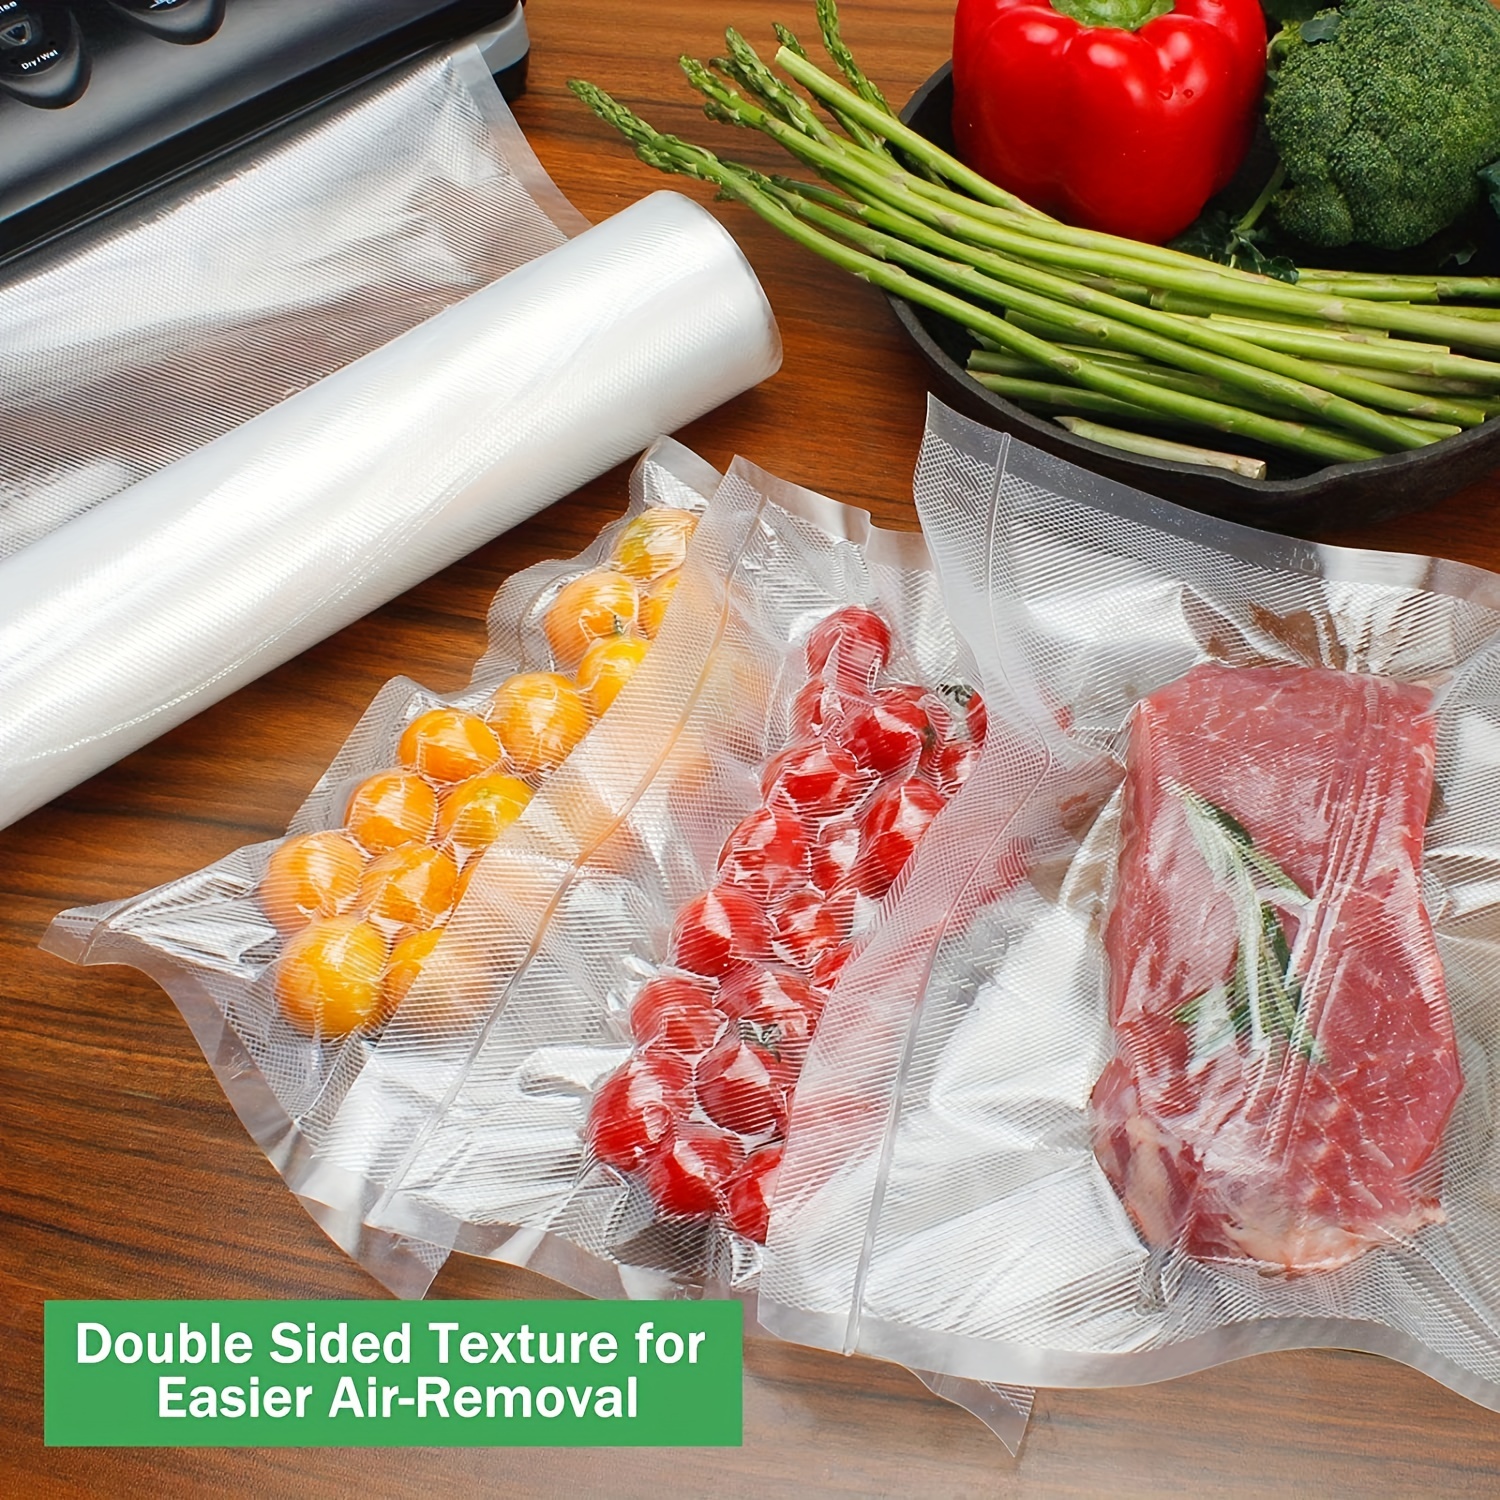 bolsas de plástico para la conservación de alimentos al vacío